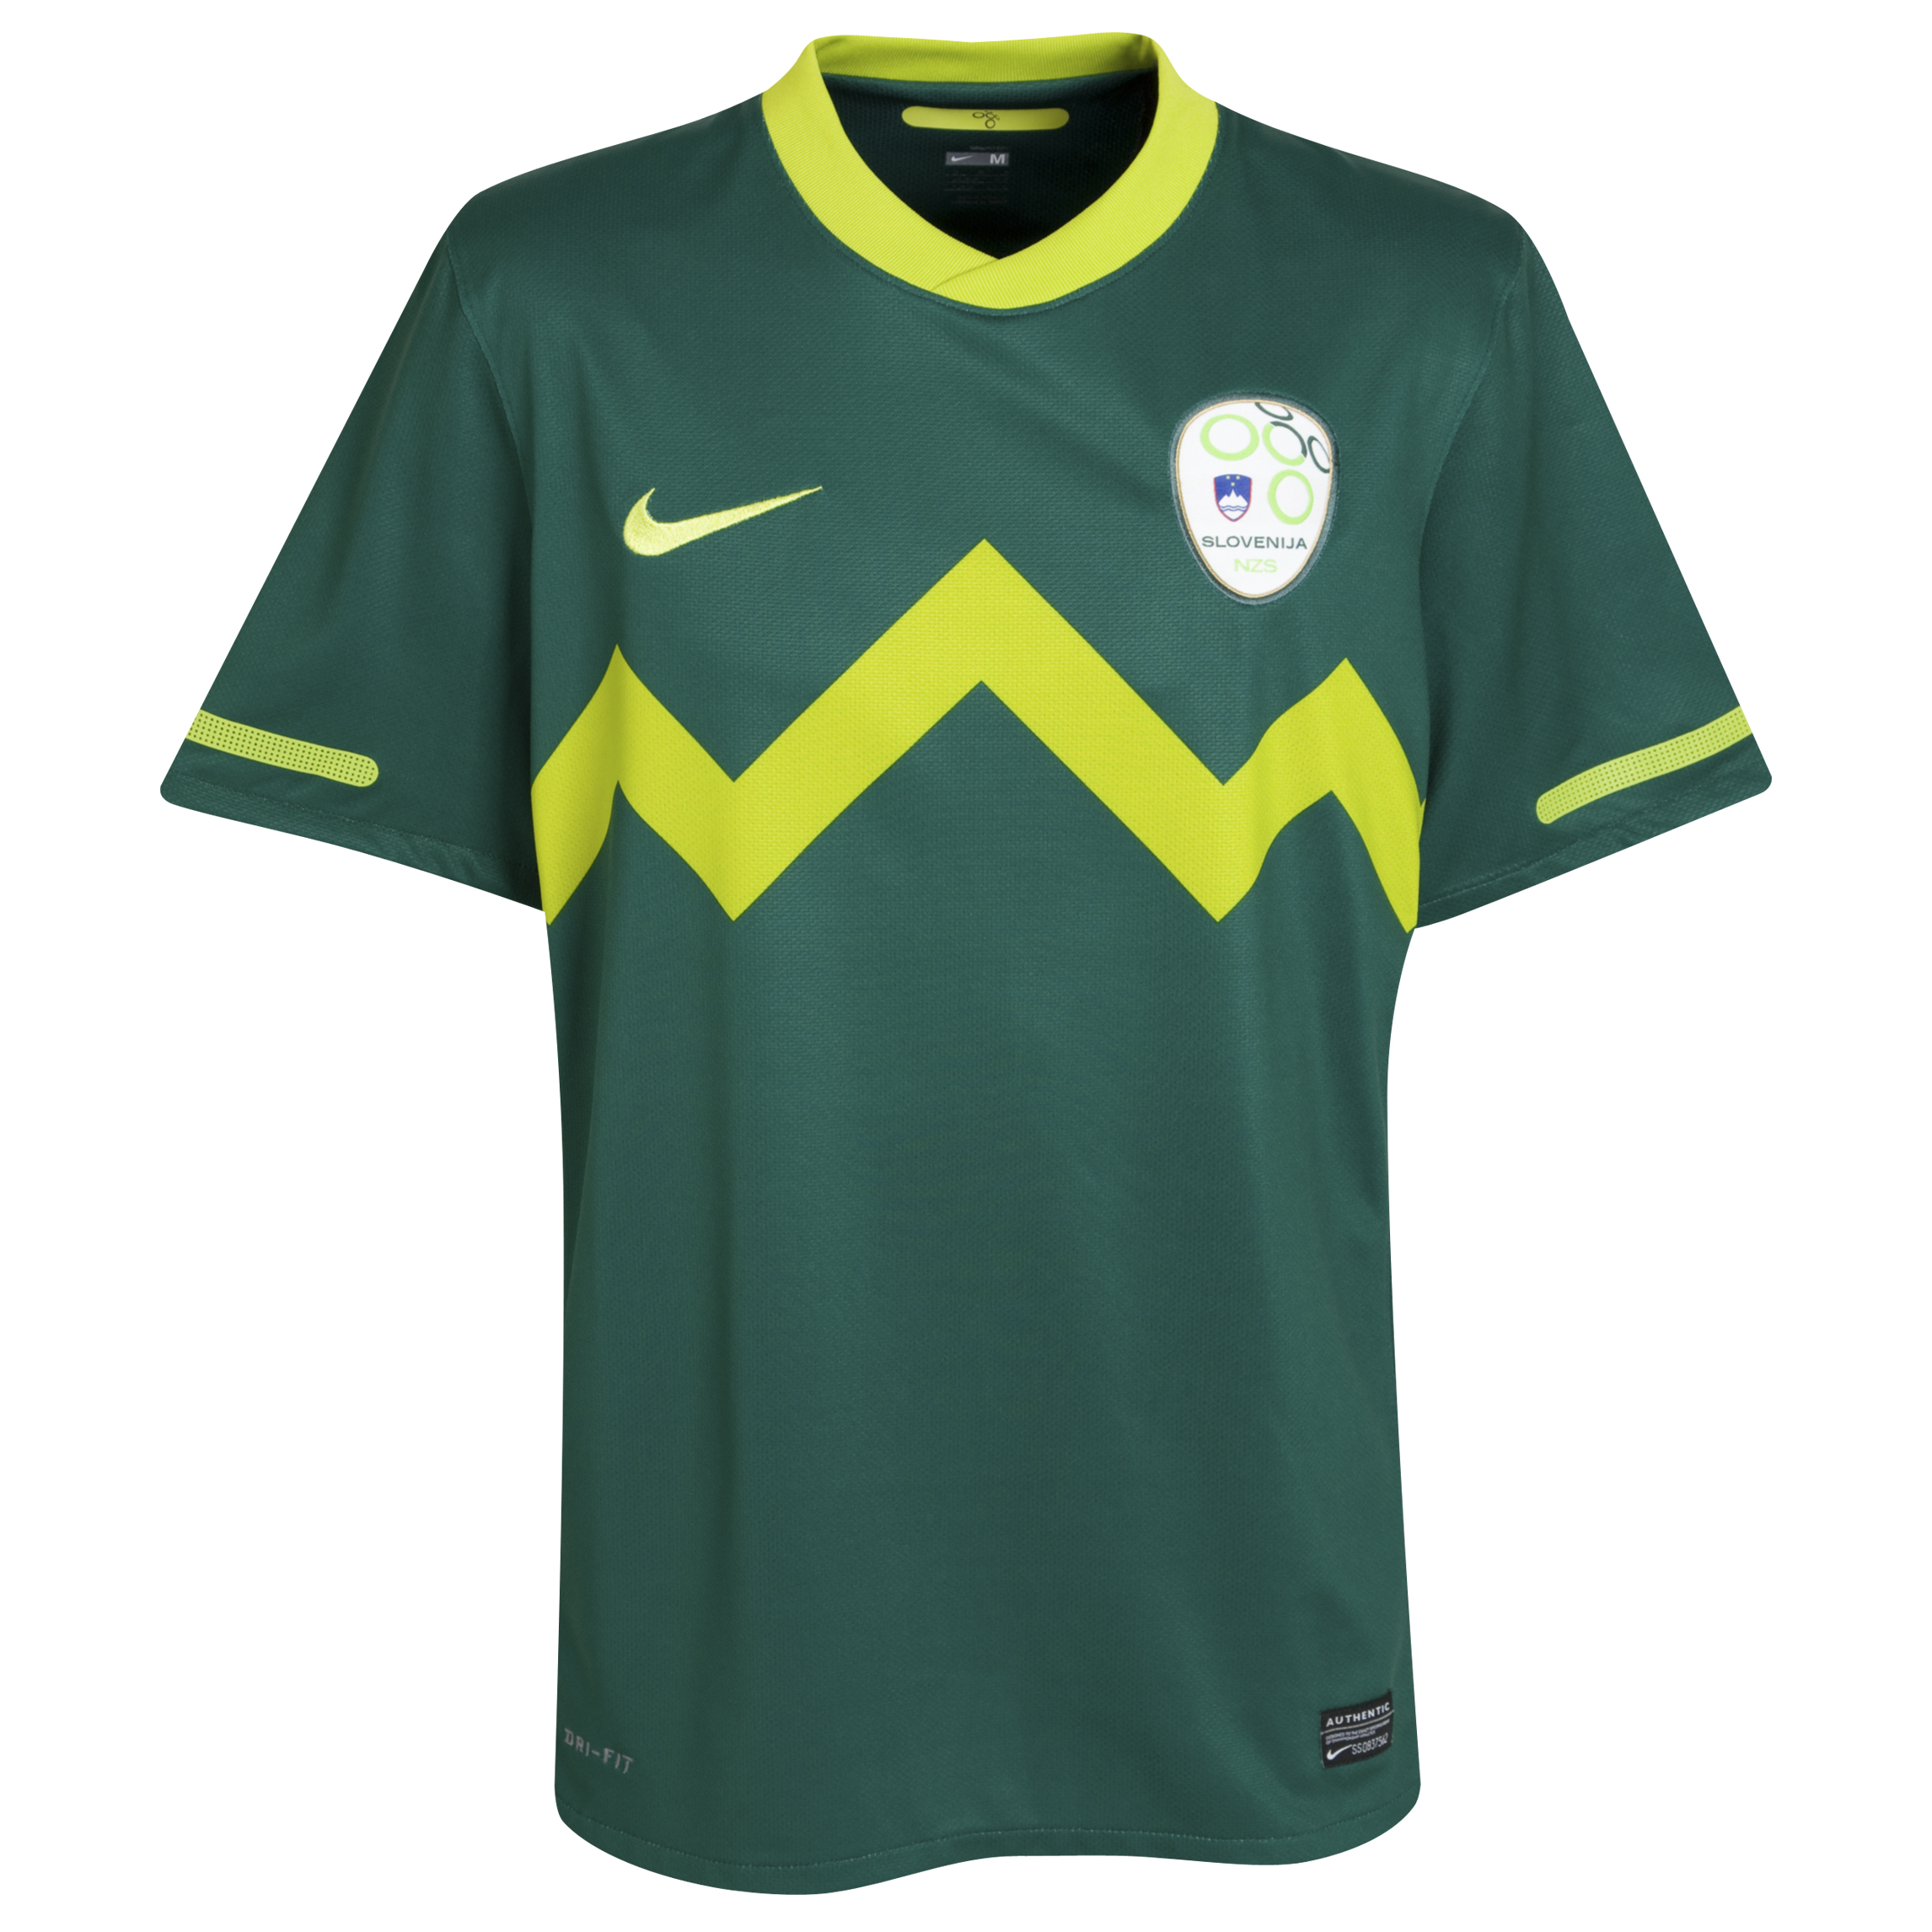 الملابس النهائيه لكأس العالم (2010) Kb-69731